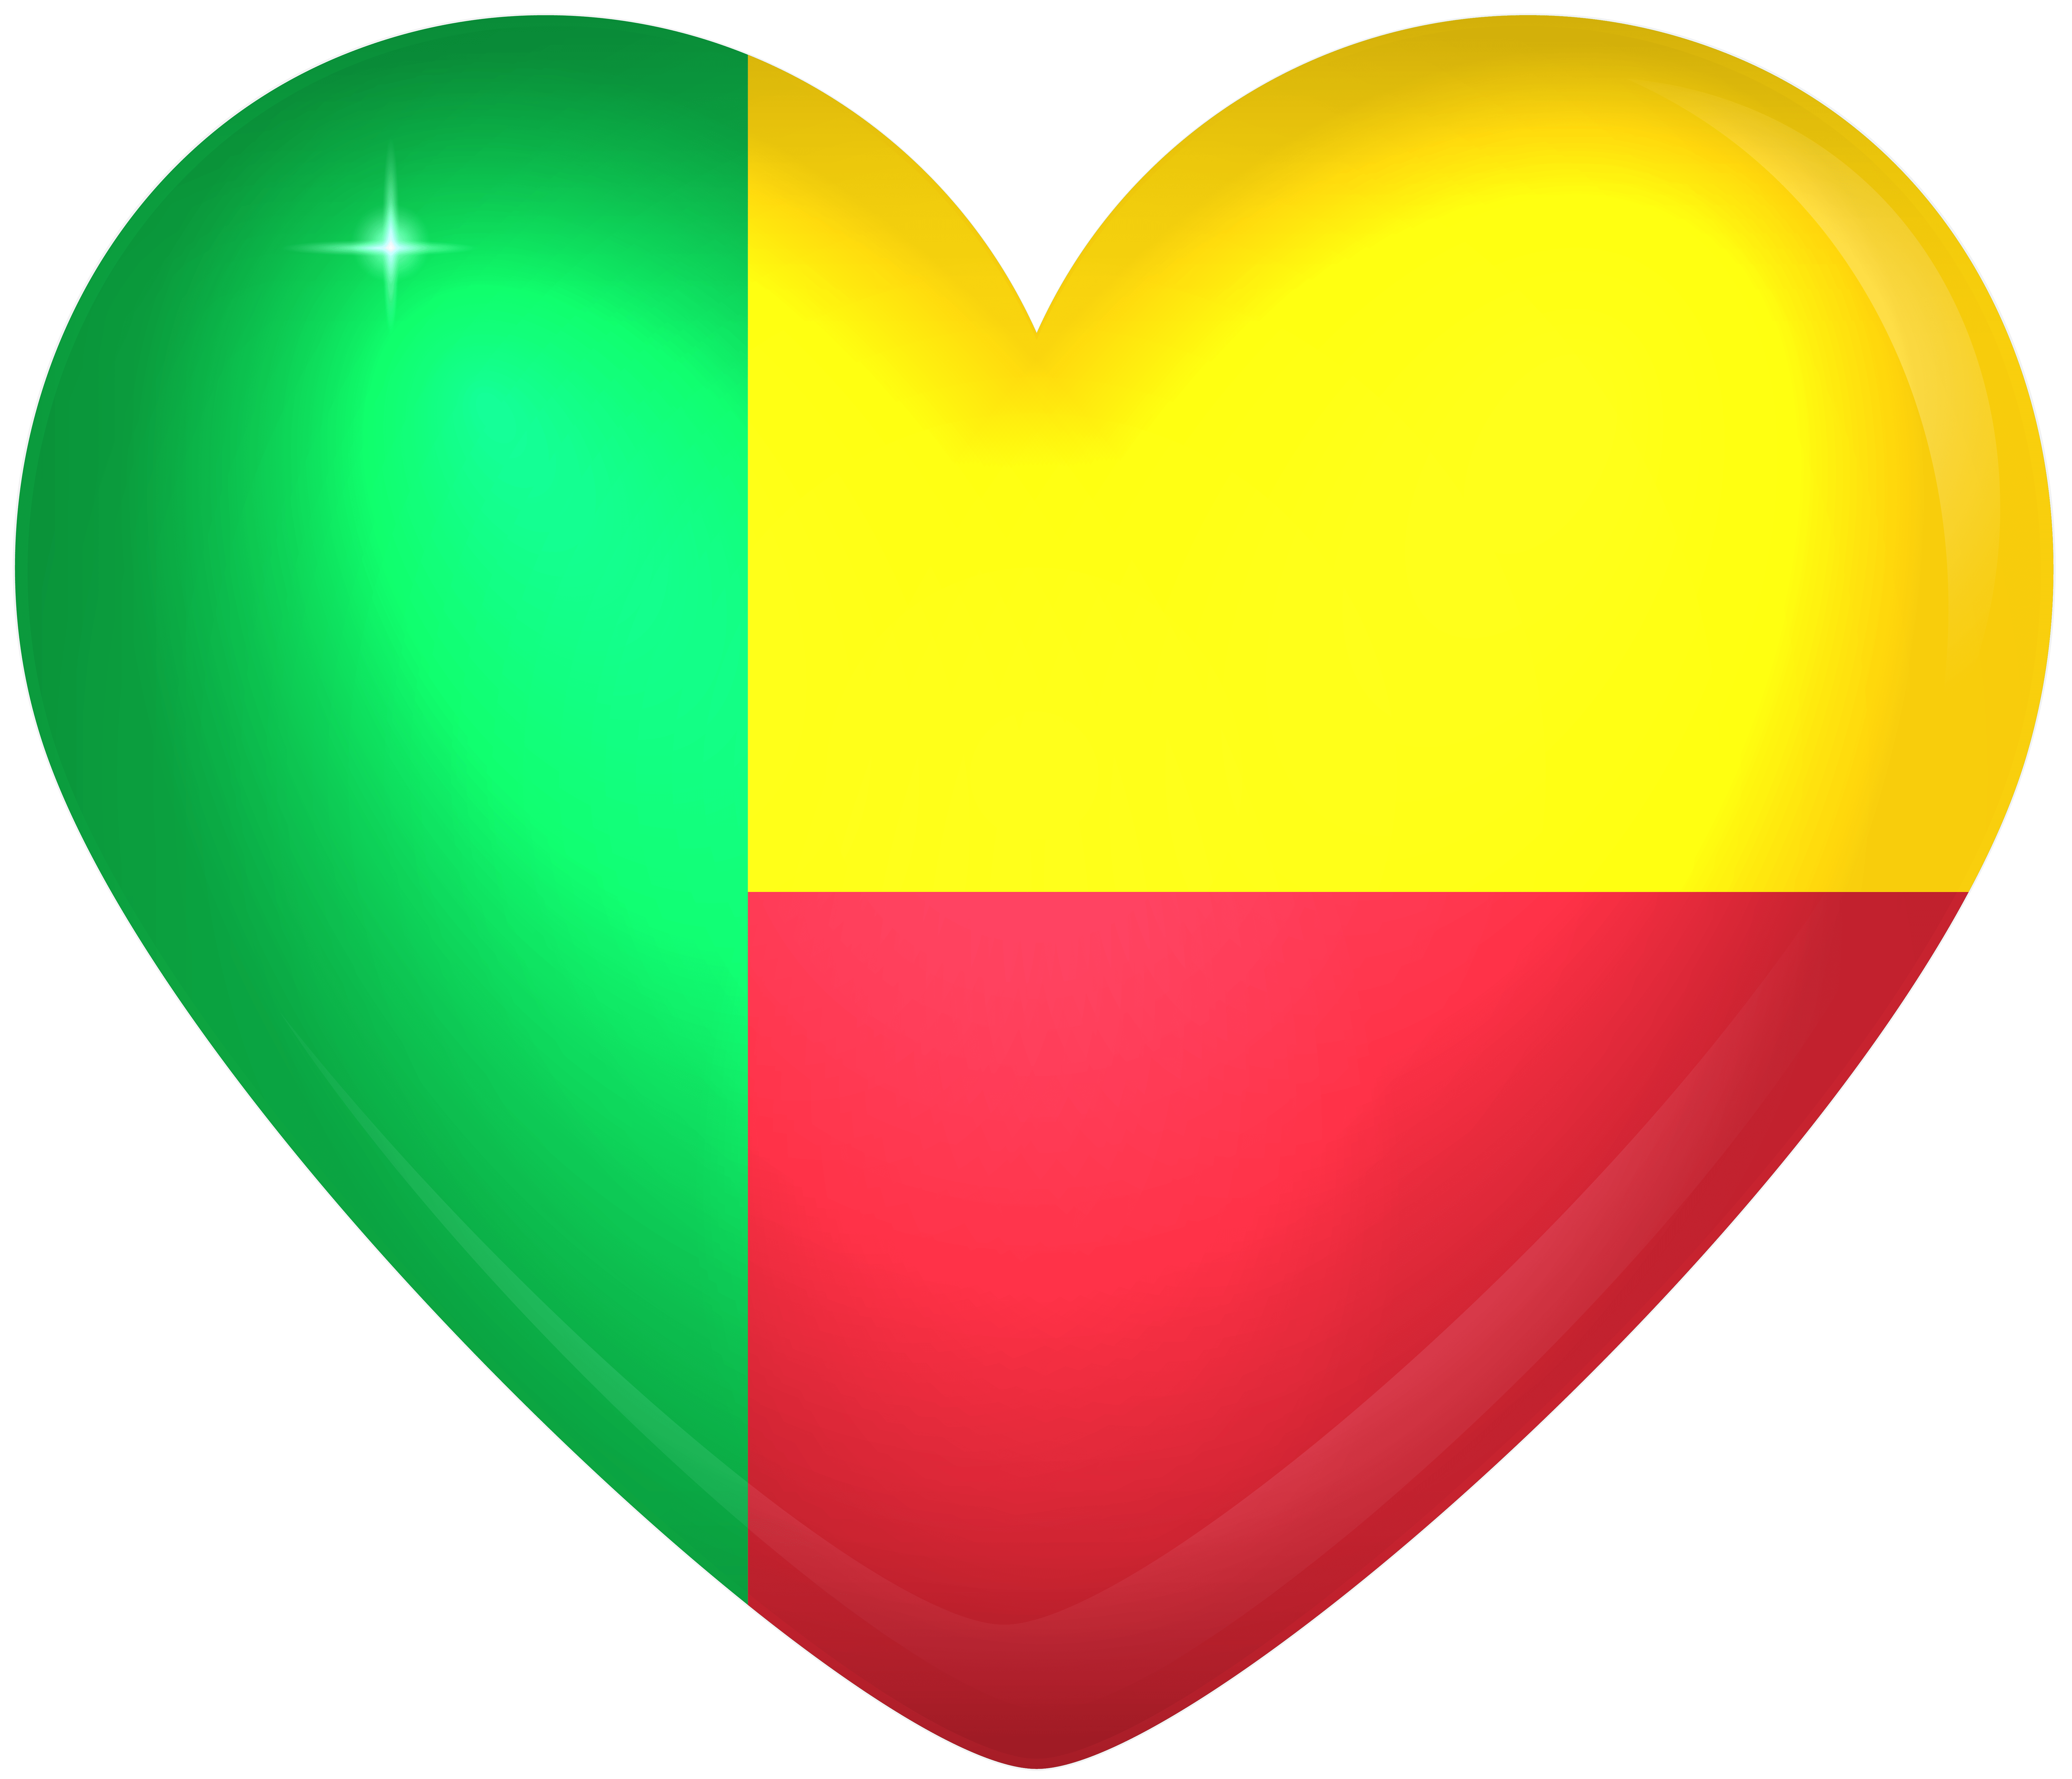 Benin Large Heart Flag Quality Image